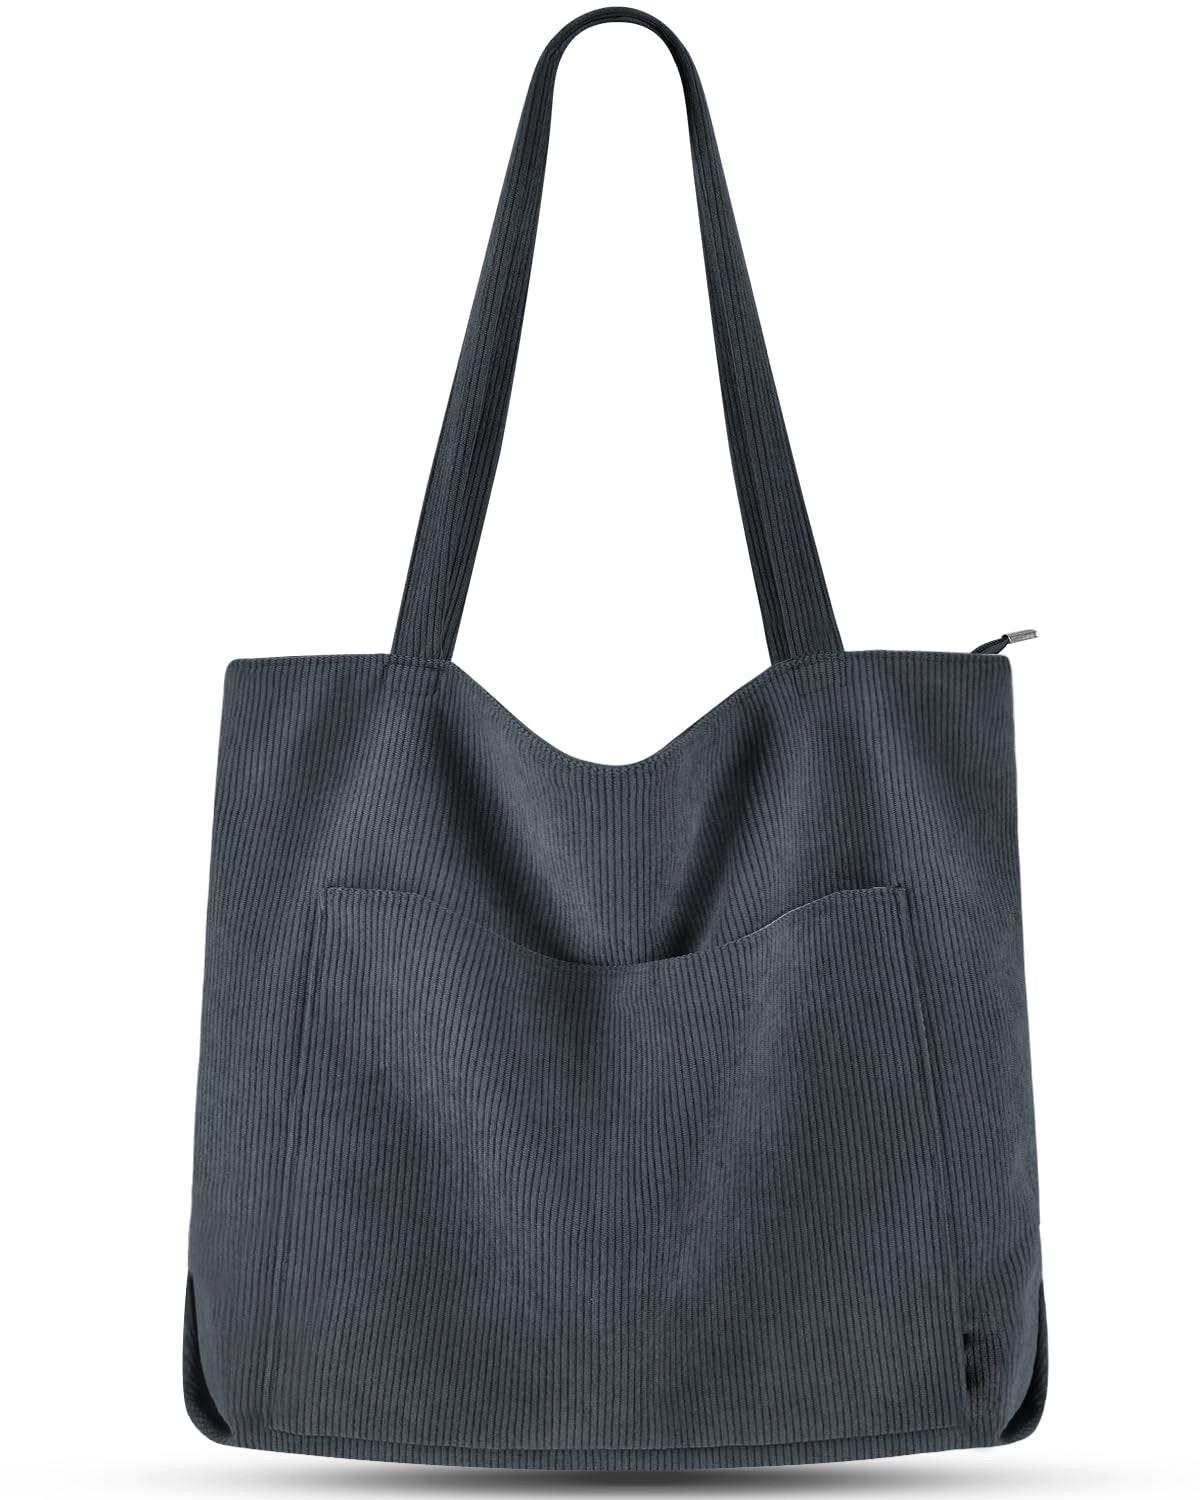 Cord Tasche Umhängetasche Mit Reißverschluss, Groß Shopper Tasche Tote Bag Handtasche Damen Grau ONE SIZE von Only-bags.store